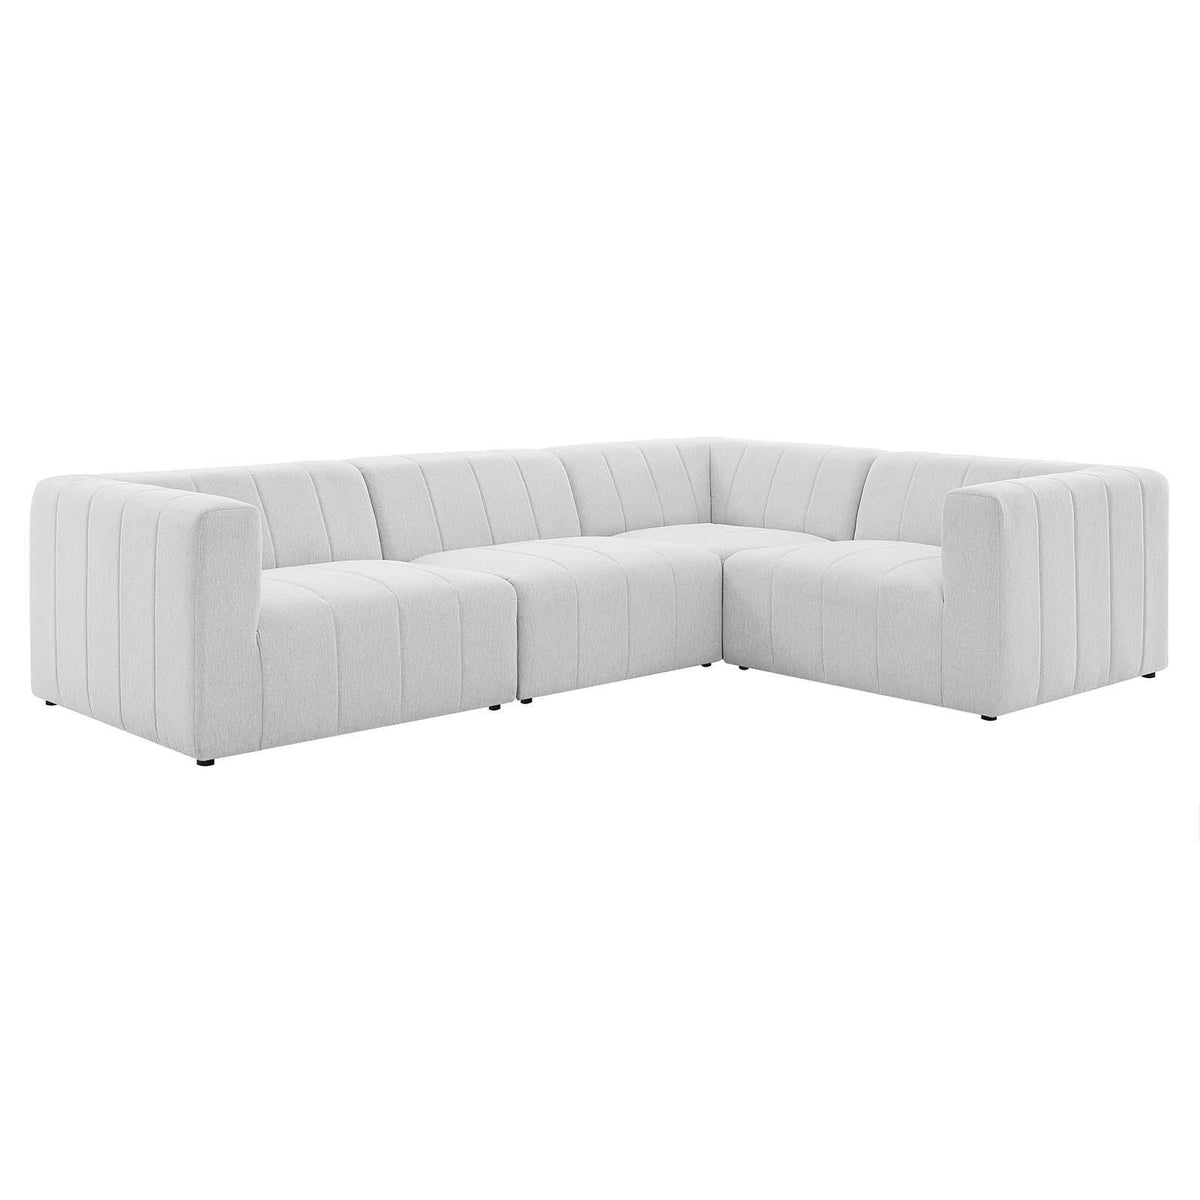 Modway Furniture Modern Bartlett Upholstered Fabric 4-Piece Sectional Sofa - EEI-4518